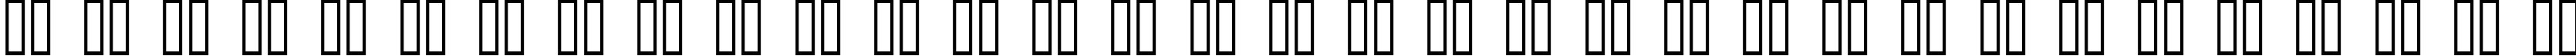 Пример написания русского алфавита шрифтом Twelve Ton Sushi